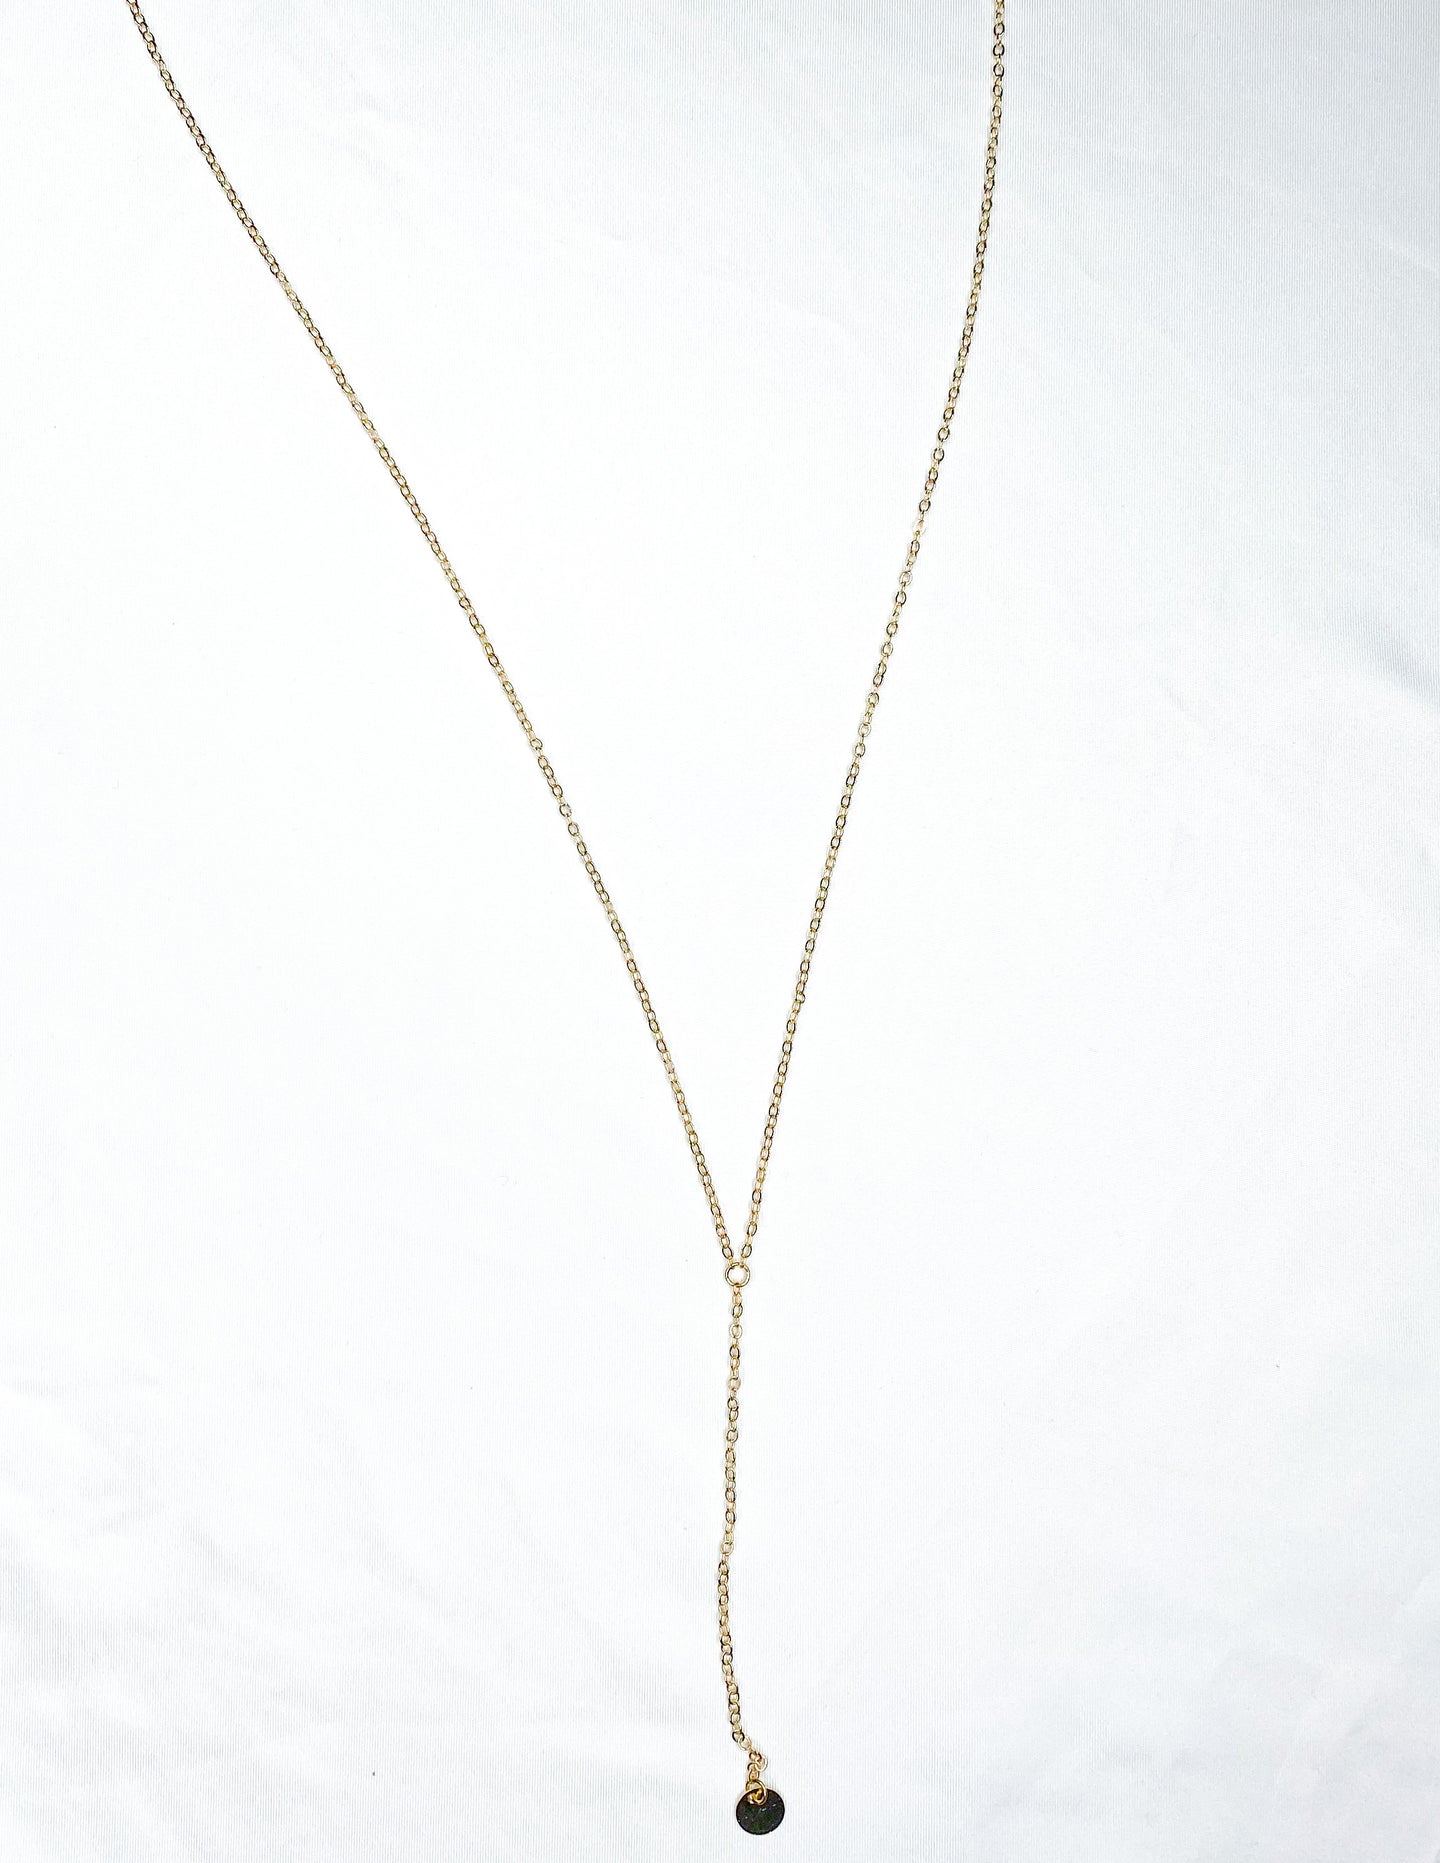 Katie Basil Designs Oakleigh Necklace